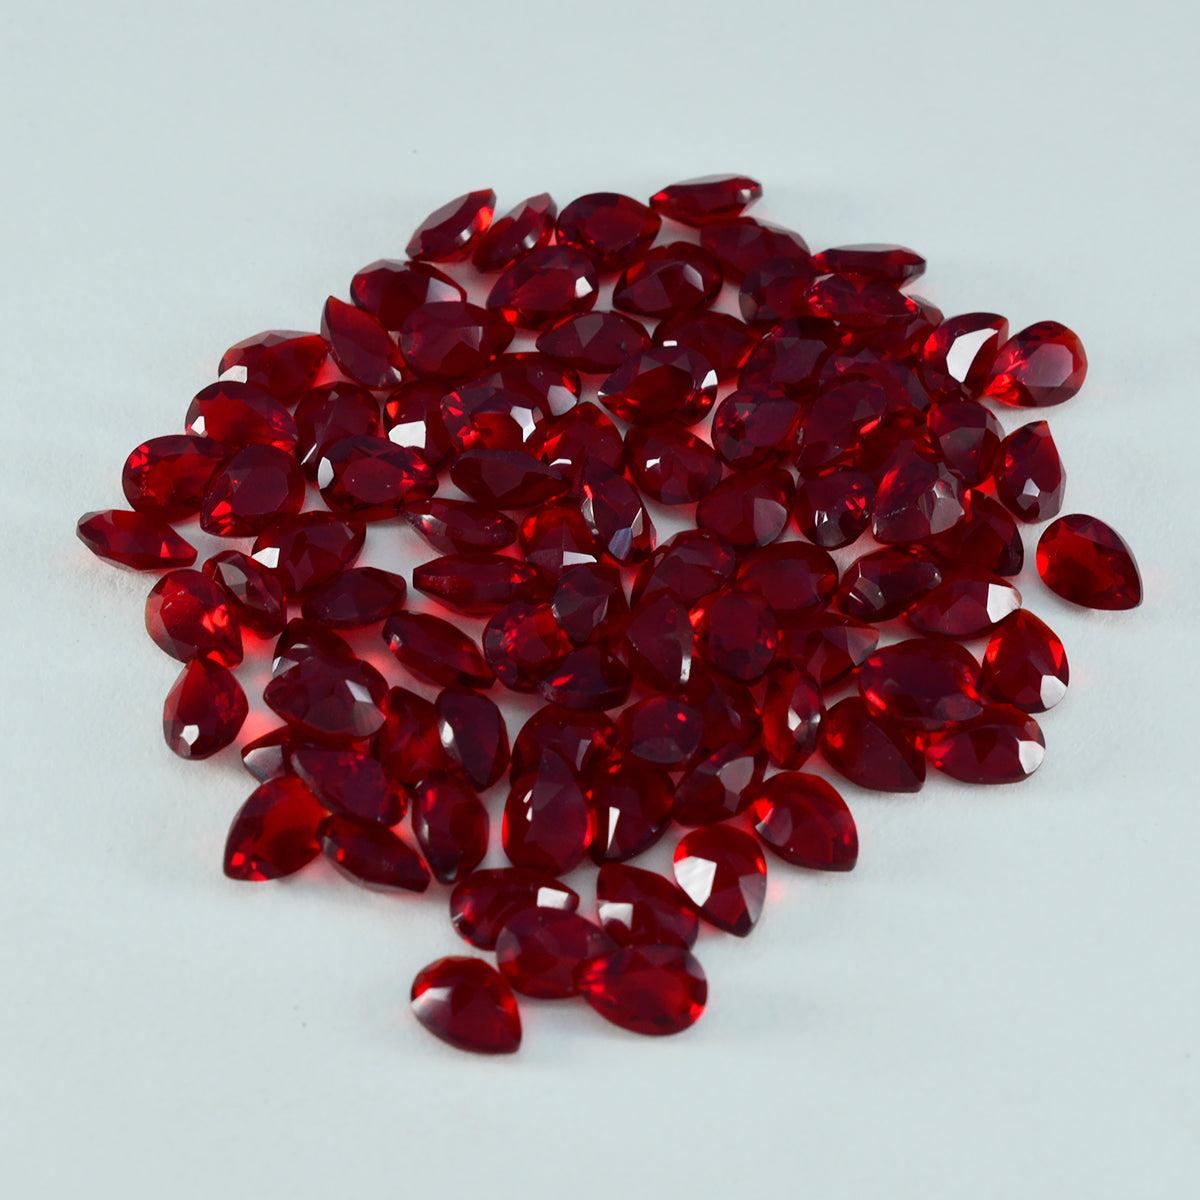 riyogems 1 шт., красный рубин, граненый 3x5 мм, грушевидная форма, сладкий качественный драгоценный камень